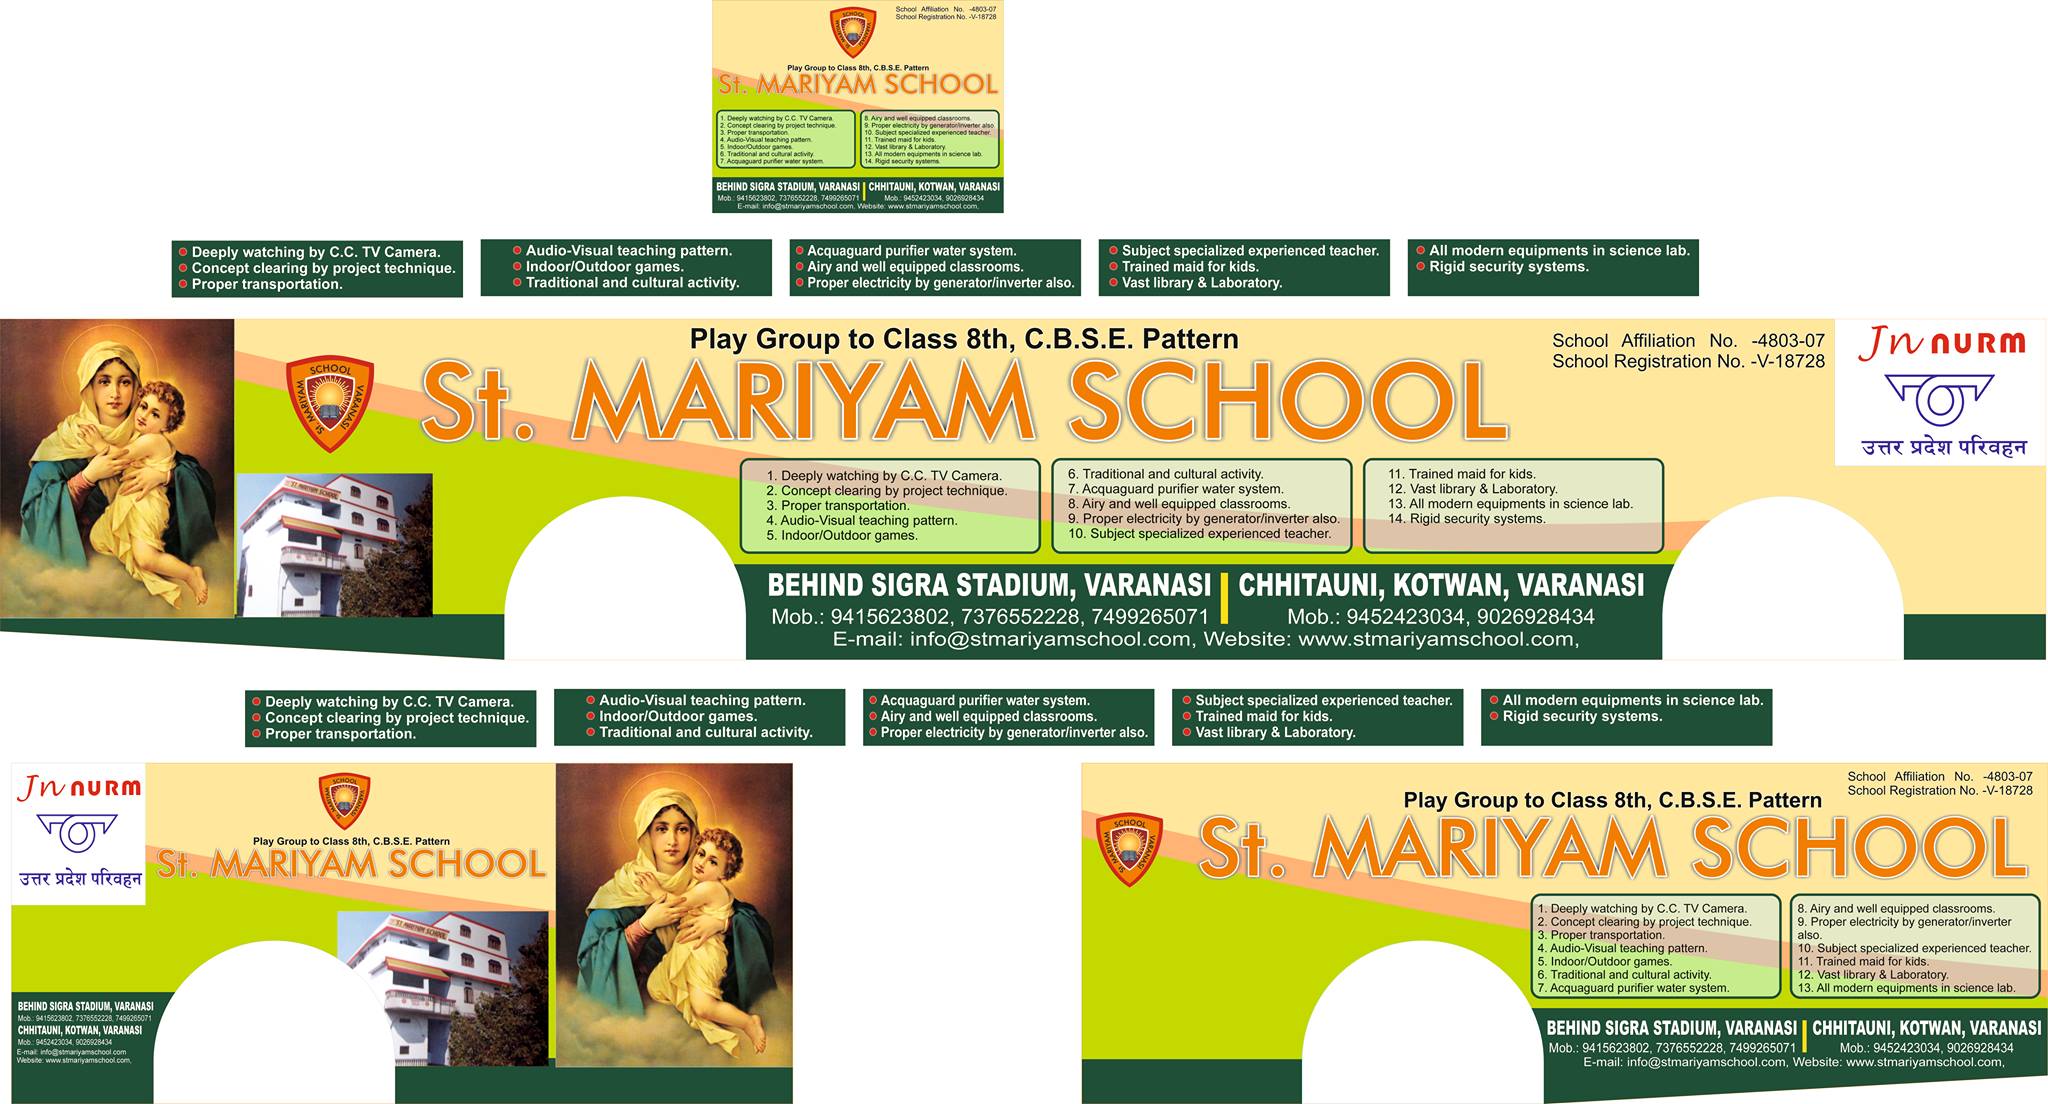 ST. MARIYAM SCHOOL